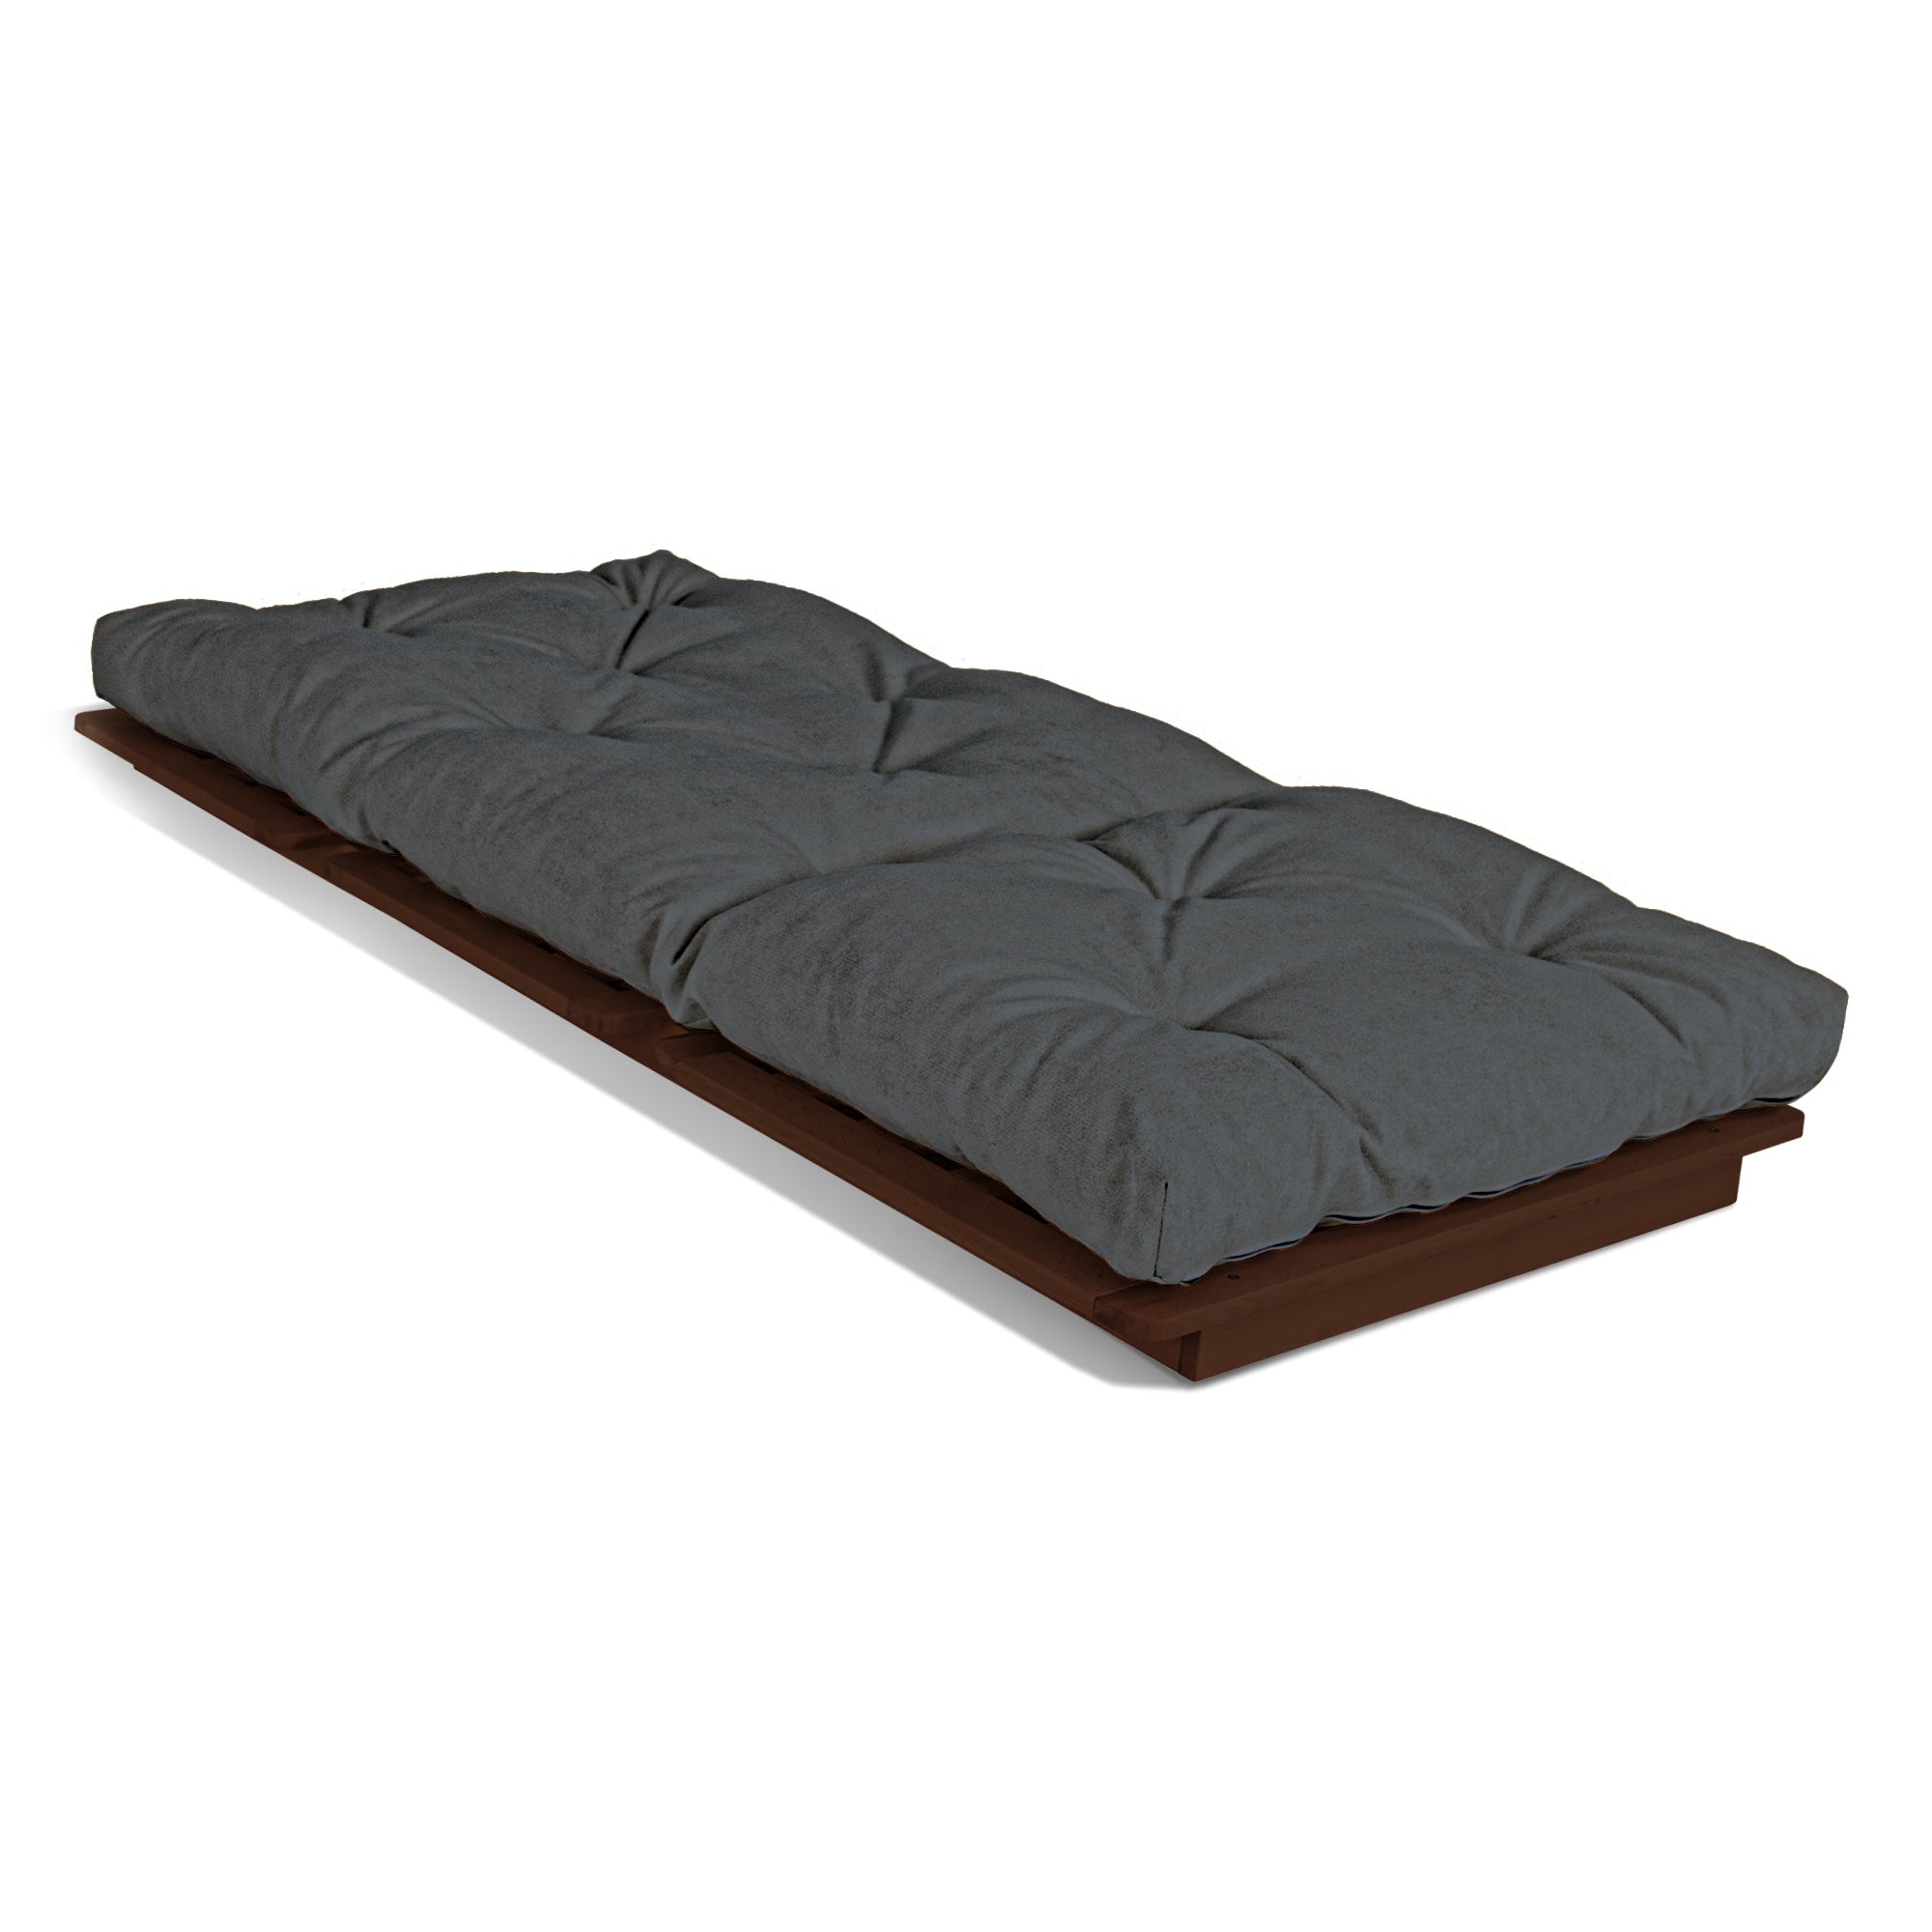 LAYTI-90 Sedia futon, struttura in legno di faggio, colore noce